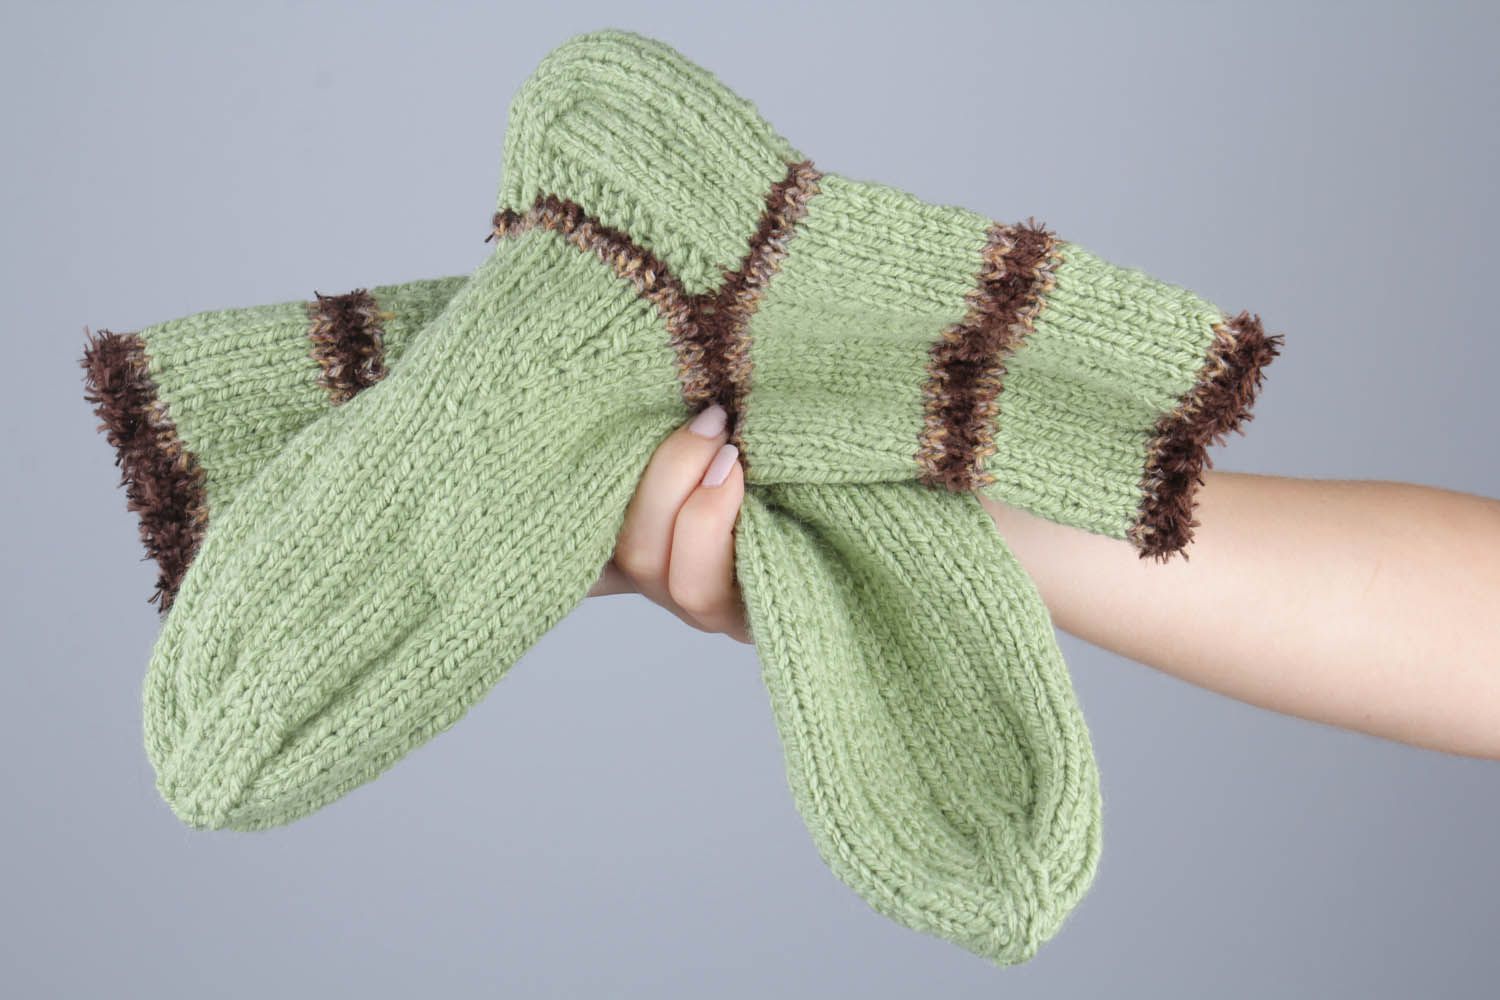 Knitted semi-woolen socks photo 5